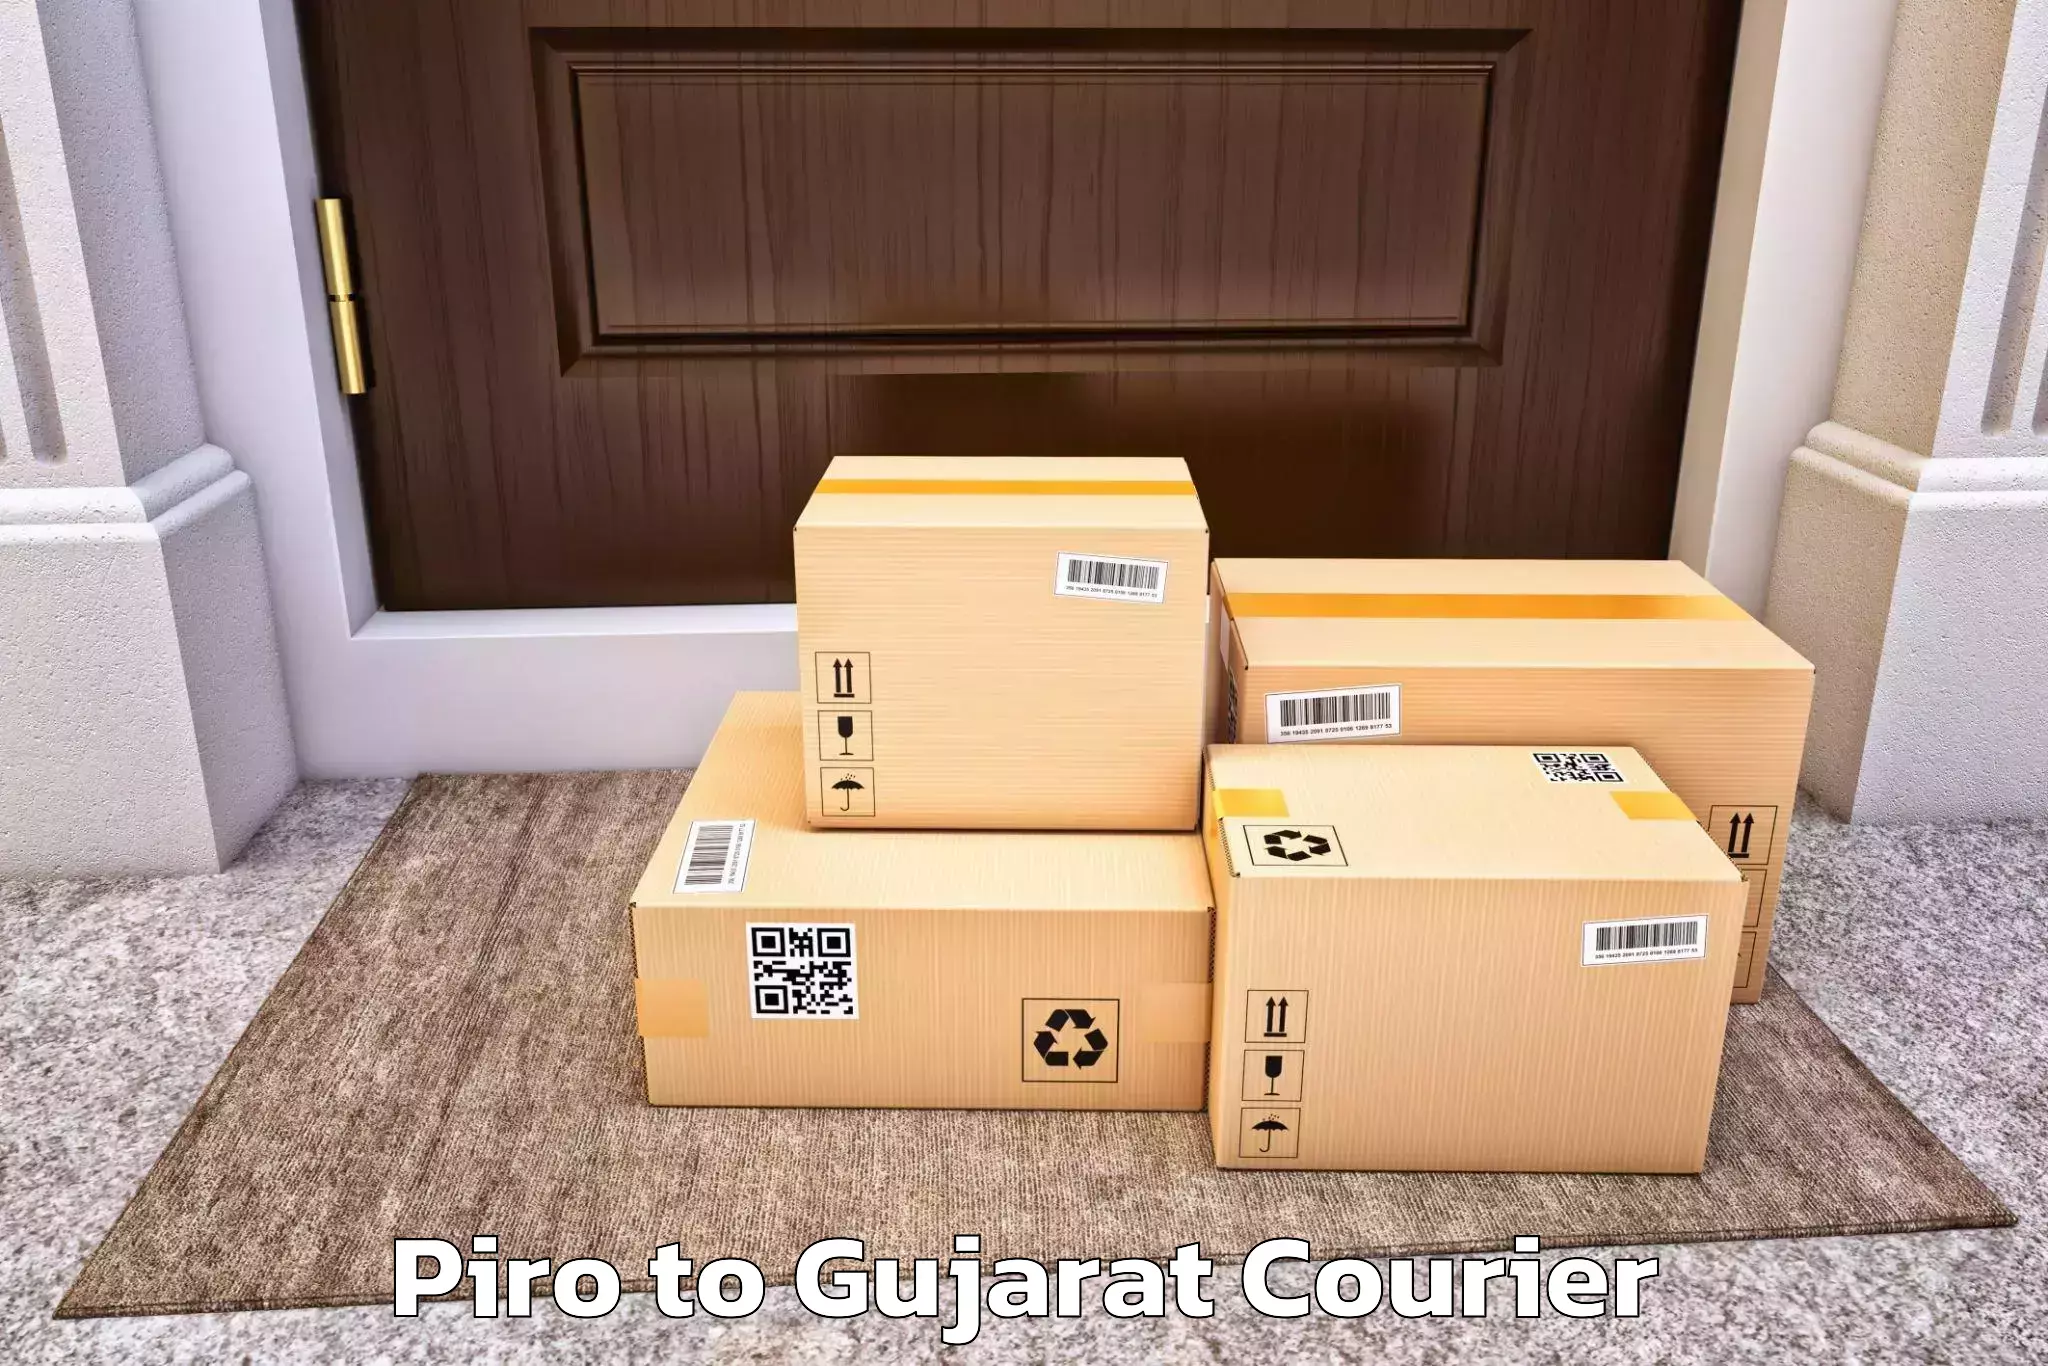 Stress-free furniture moving Piro to Surat